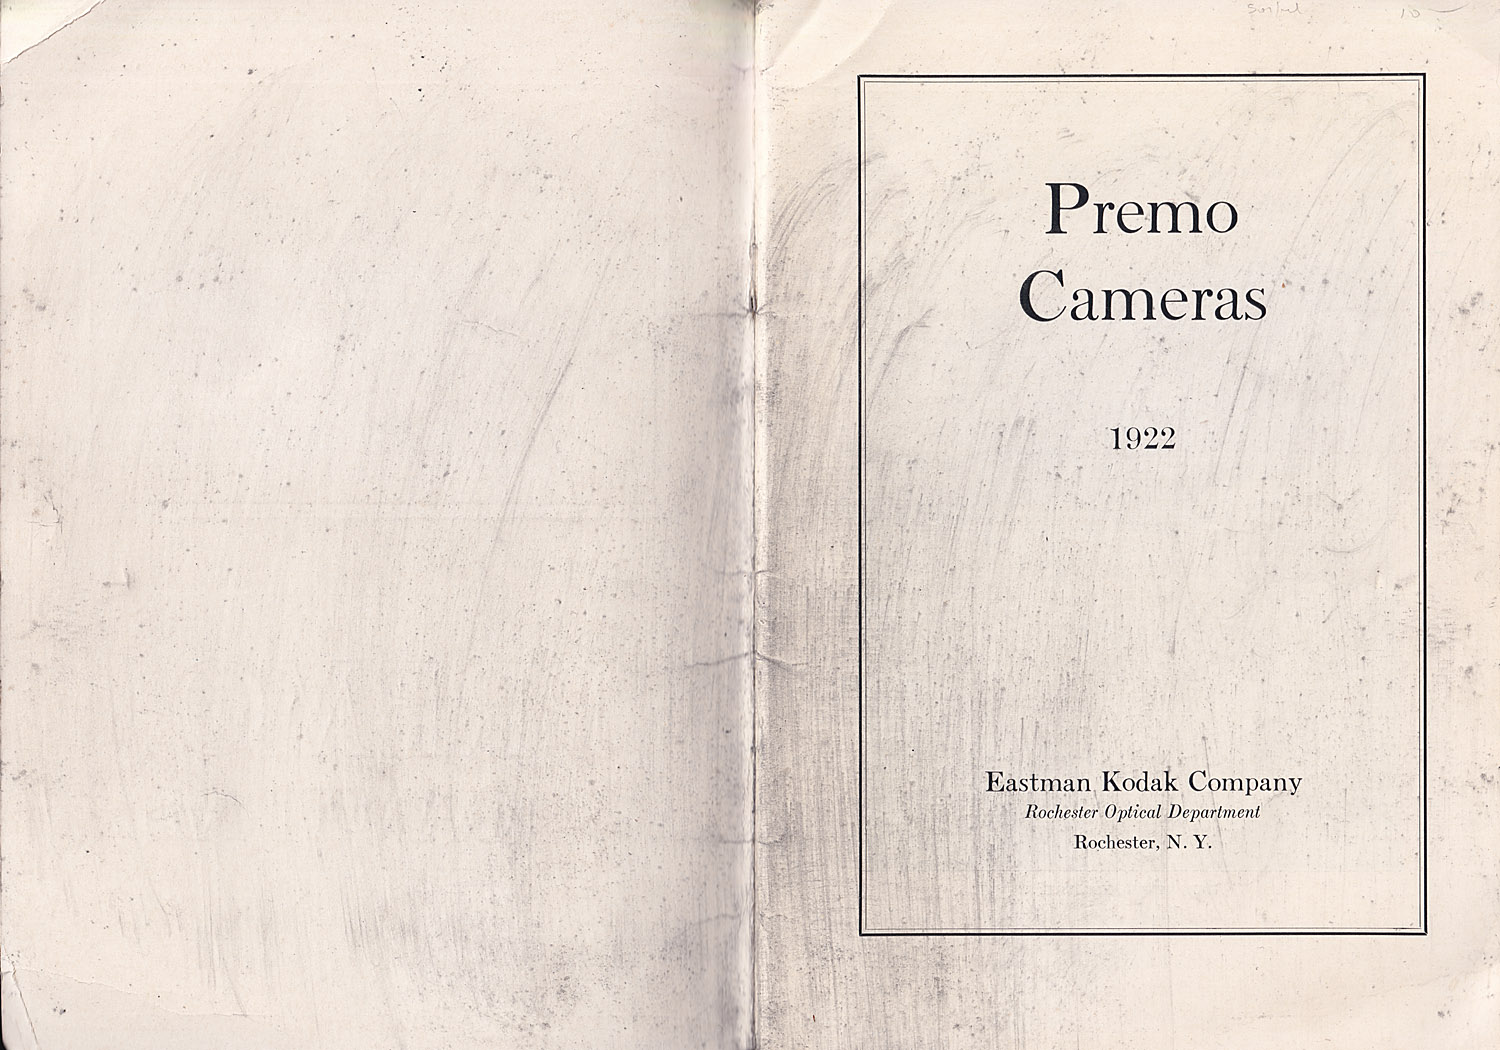 1375.roc.dept.premo.cameras.1922-ifc-01-1500.jpg